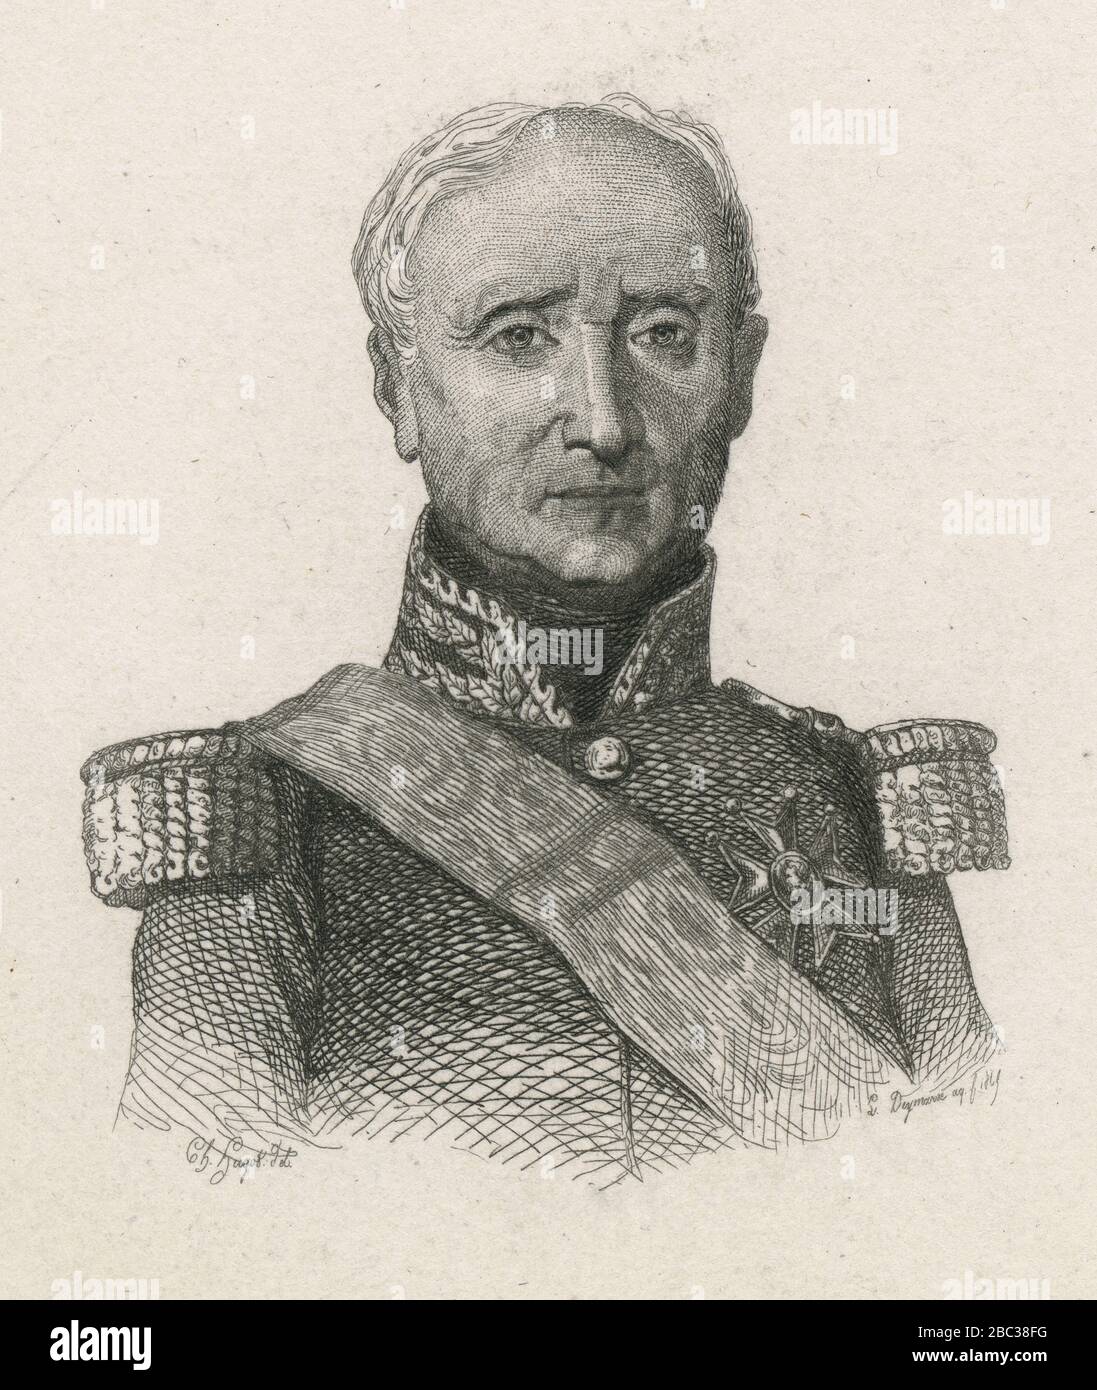 Incisione antica, Thomas Robert Bugeaud. Thomas Robert Bugeaud (1784-1849), marchese di la Piconnerie, Duca d'Isly, è un soldato francese, maresciallo di Francia, e Governatore Generale d'Algeria. FONTE: INCISIONE ORIGINALE Foto Stock